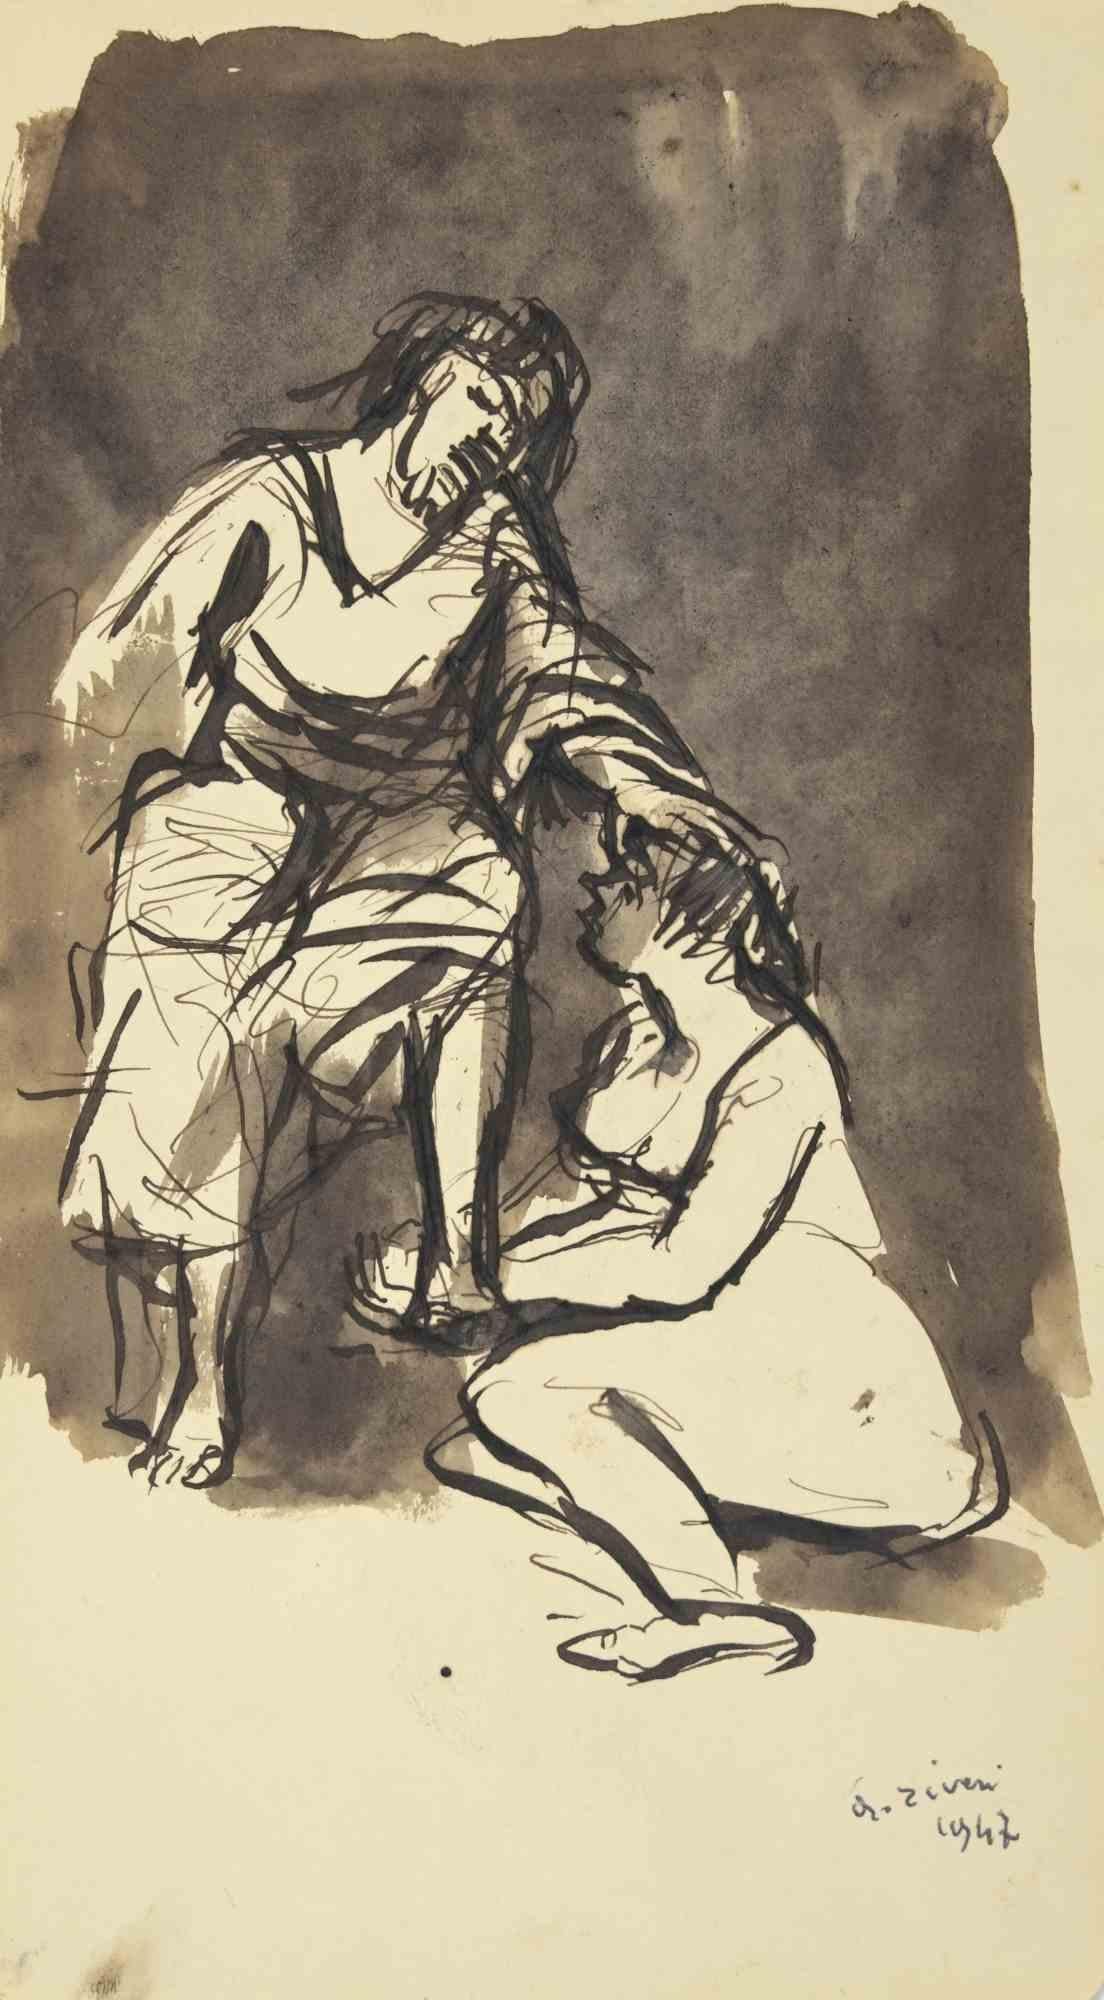 Das Gebet ist eine Zeichnung von Alberto Ziveri aus dem Jahr 1947

Tusche und Aquarell auf Papier.

Handsigniert.

In gutem Zustand. 

Das Kunstwerk wird durch geschickte Striche meisterhaft dargestellt.

Alberto Ziveri (Rom, 1908 - 1990), der